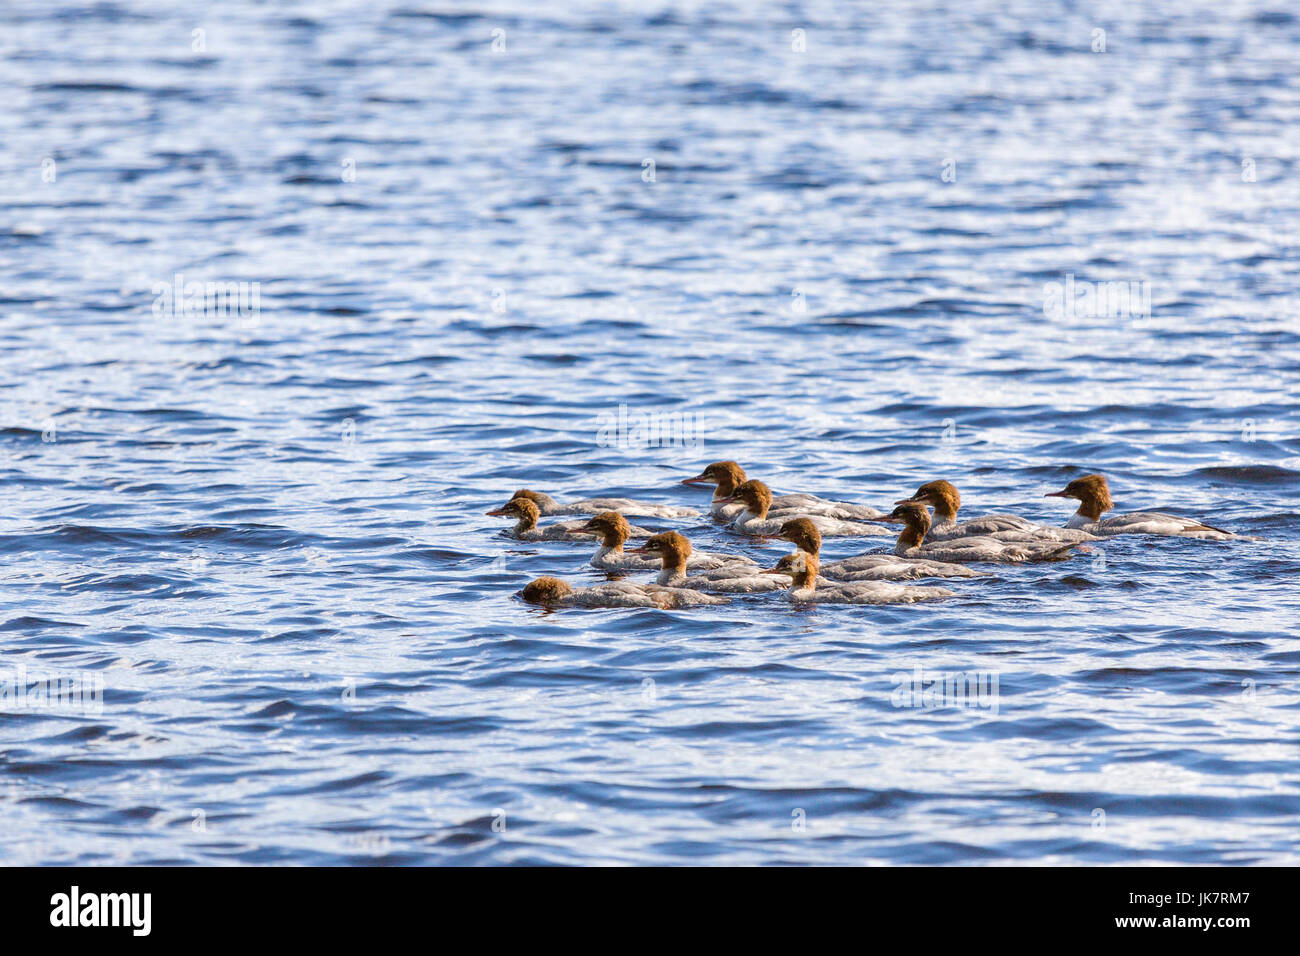 Gruppo di giovani Common Merganser (N. America) o smergo maggiore (Eurasia) (Mergus merganser) nel lago Uspen, Lerum, Svezia modello di rilascio: No. Proprietà di rilascio: No. Foto Stock